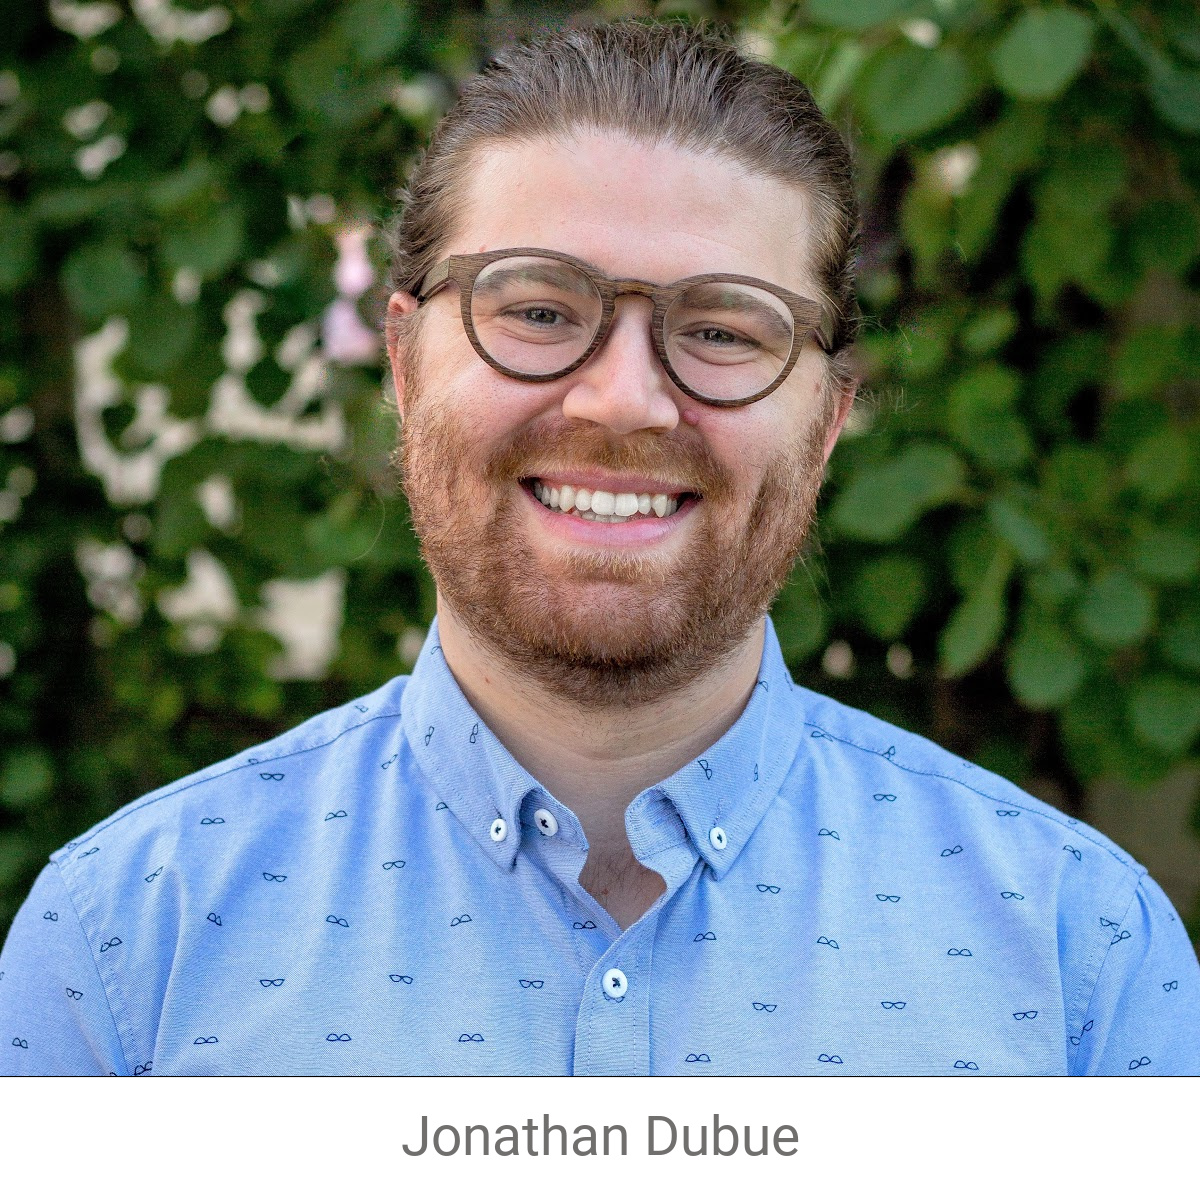 Jonathan Dubue